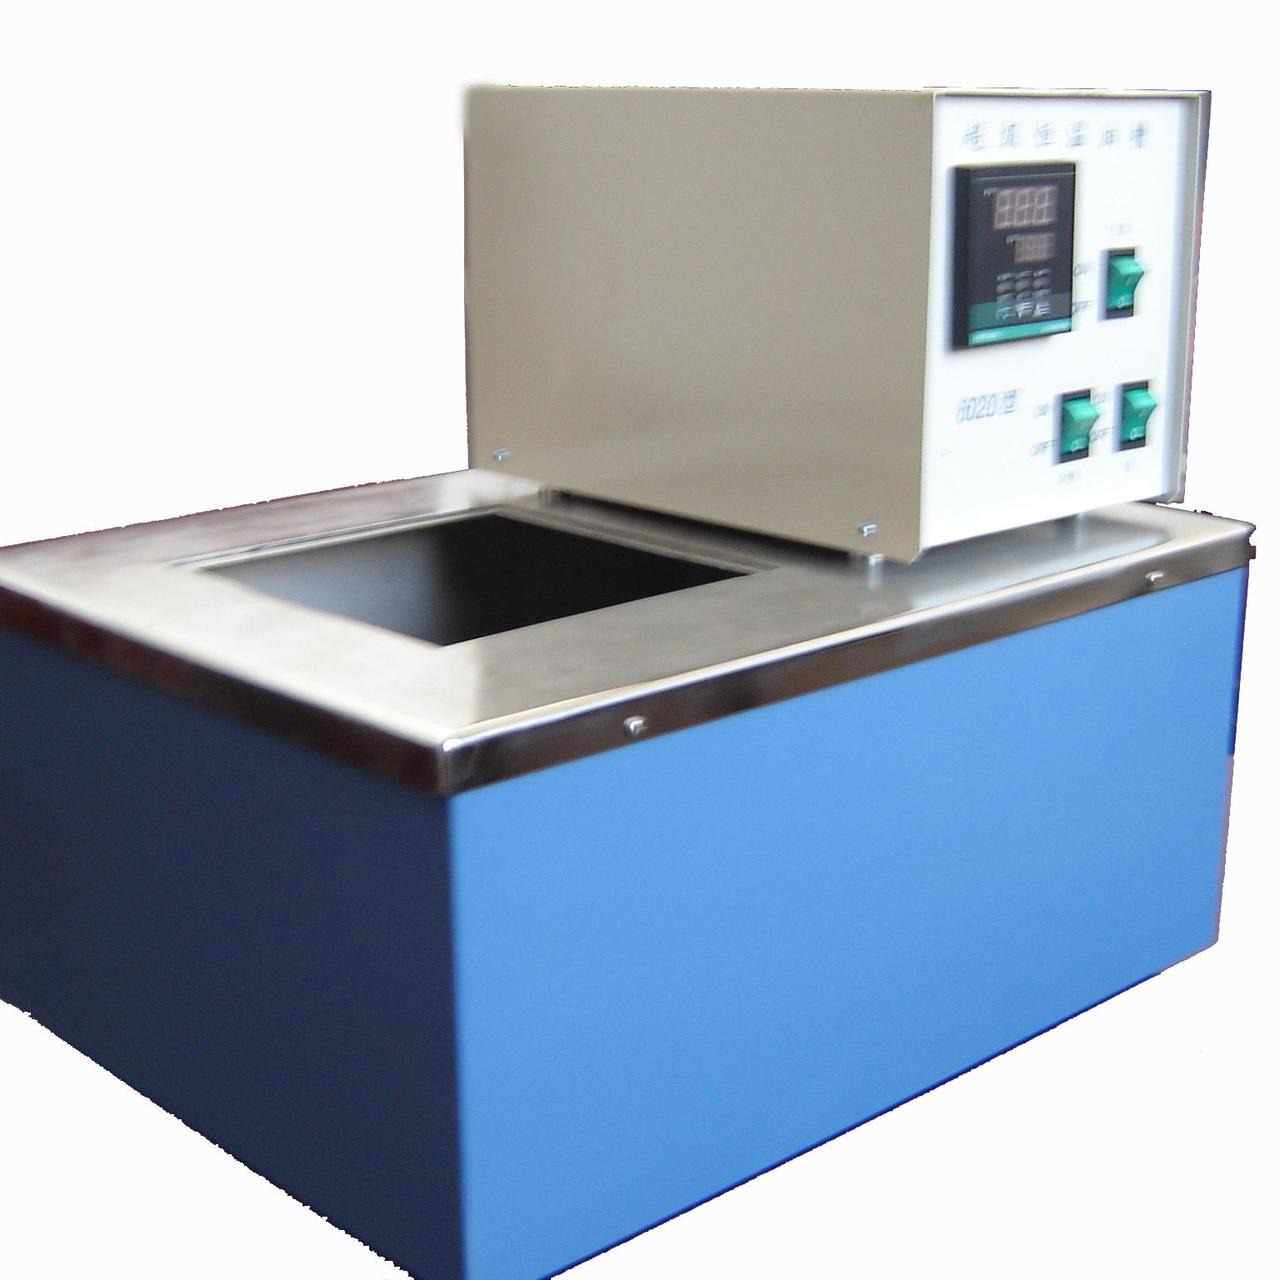 厂家直销嘉仪JAY-5179数字显示水汽蒸发装置  符合GB4706.13-2008标准水汽蒸发试验机